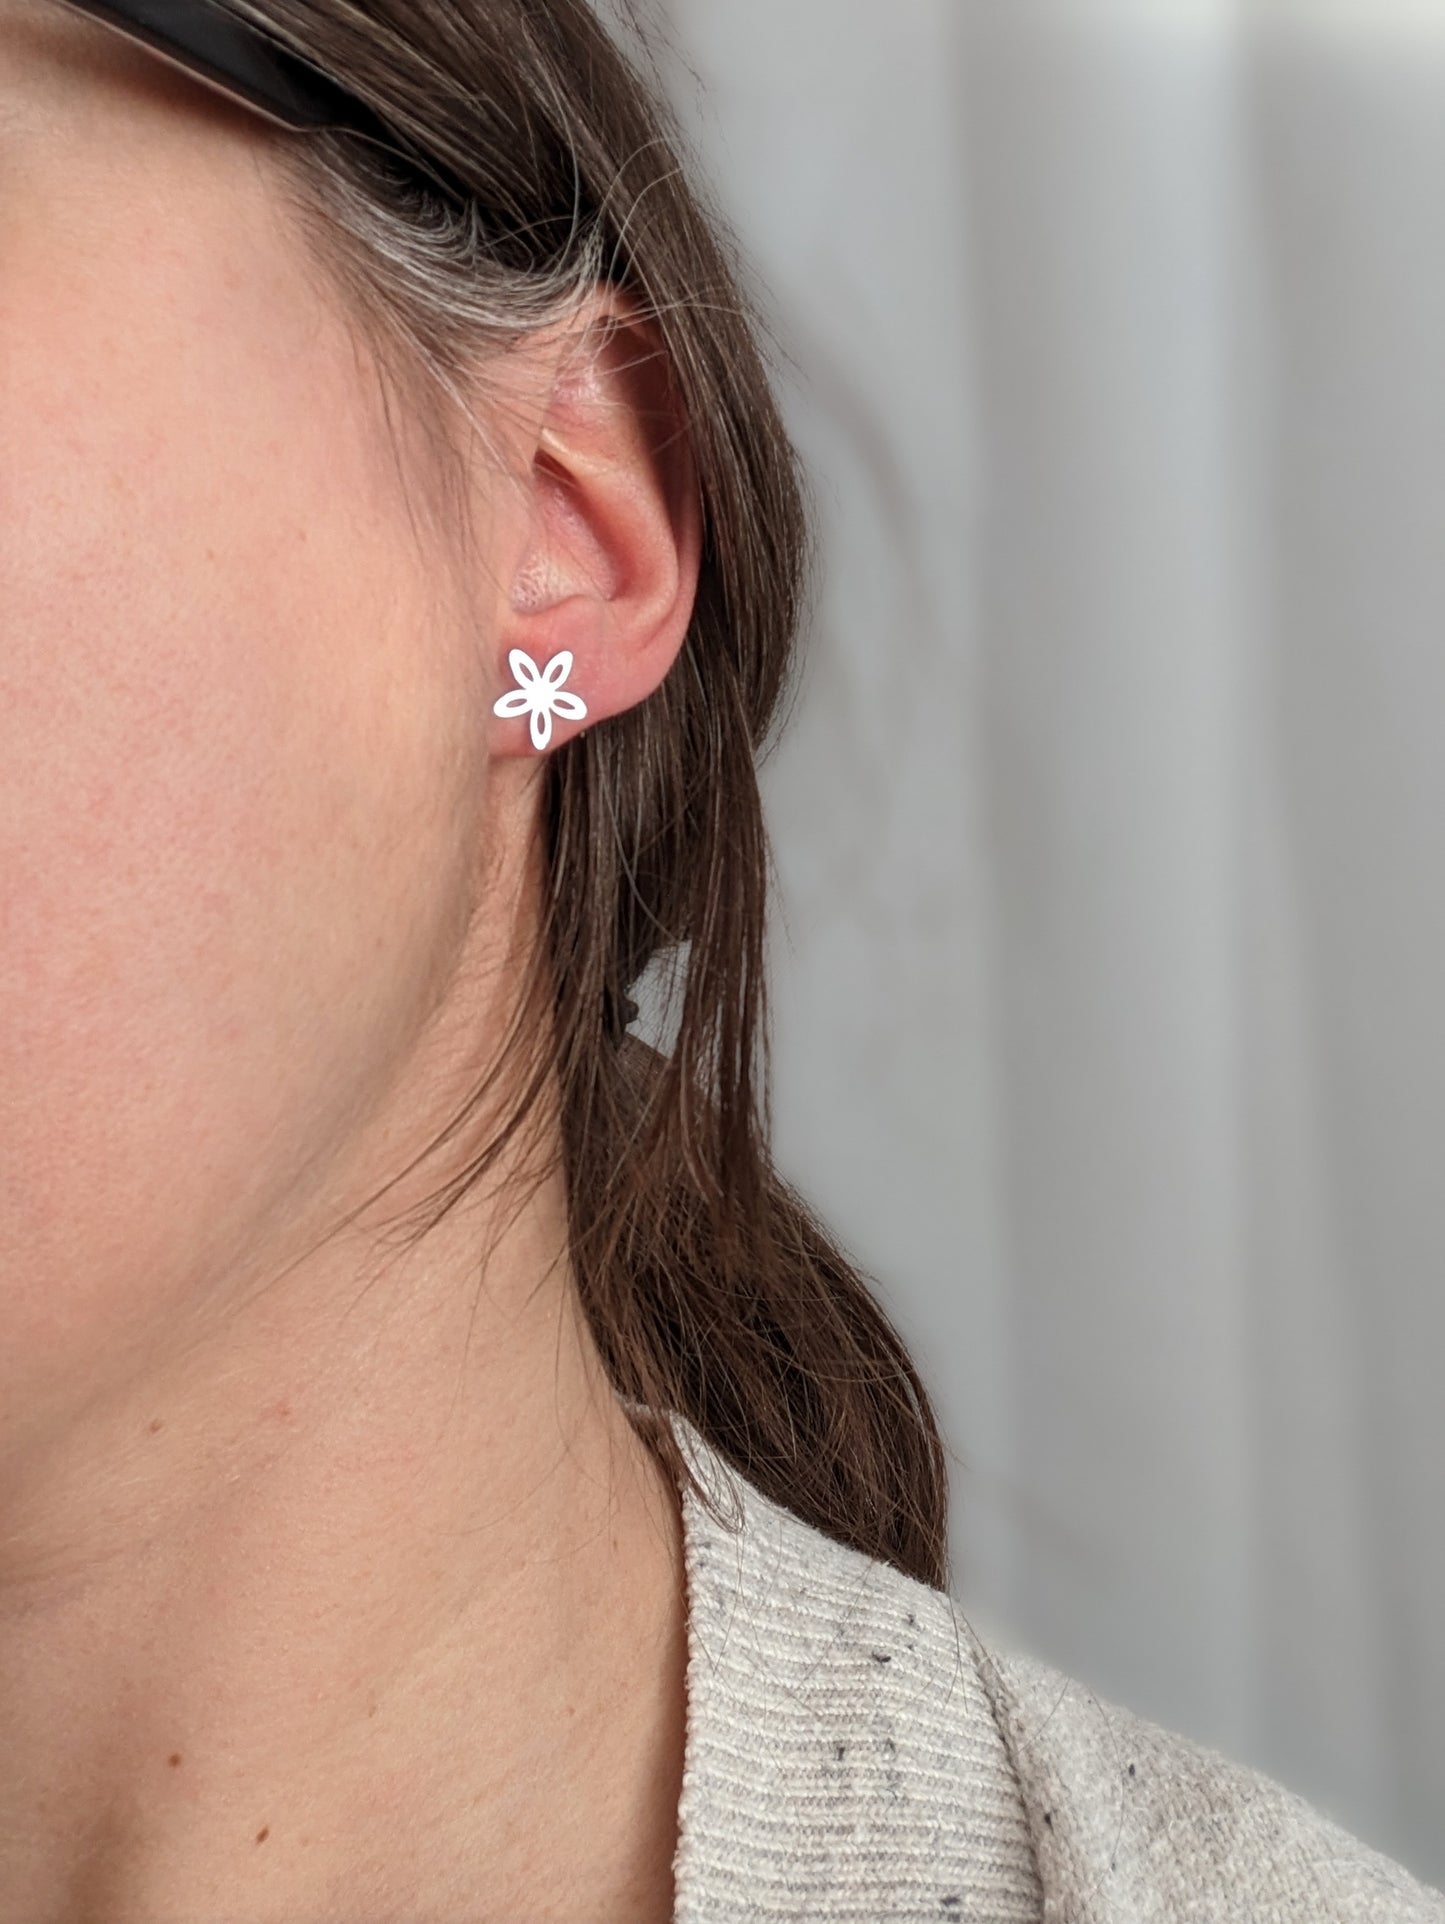 Boucles d'oreilles fleur //  flower stud earrings // stainless steel earrings // minimalist jewelry // (bo-1787)